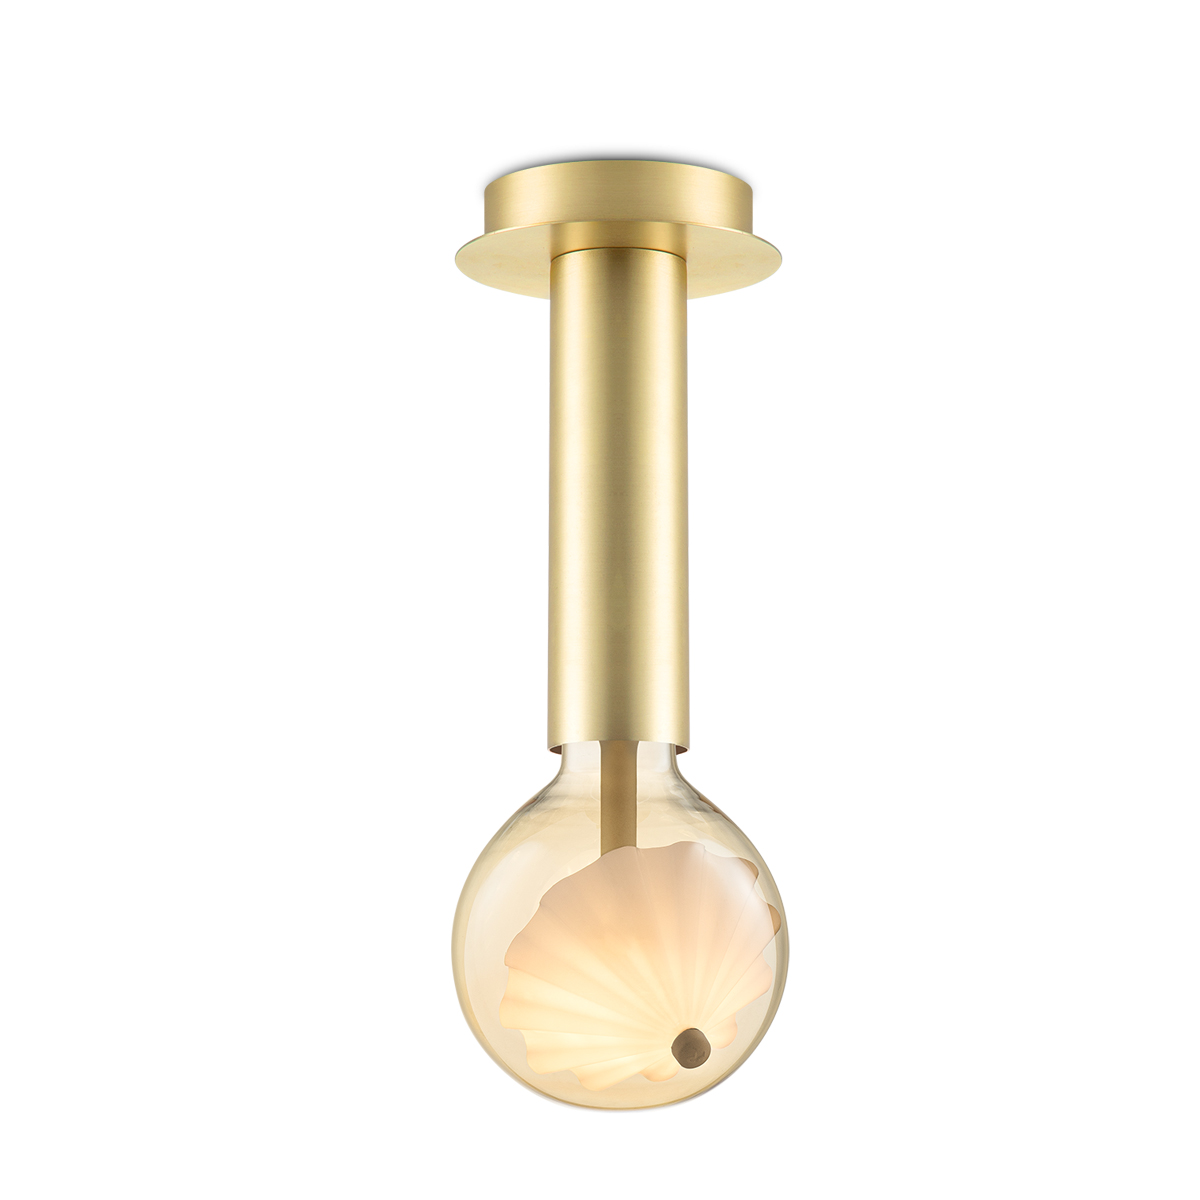 Tangla lighting - TLC7045-21BS - LED Ceiling lamp 1 Light - move me globus - brass - large scepter - E27